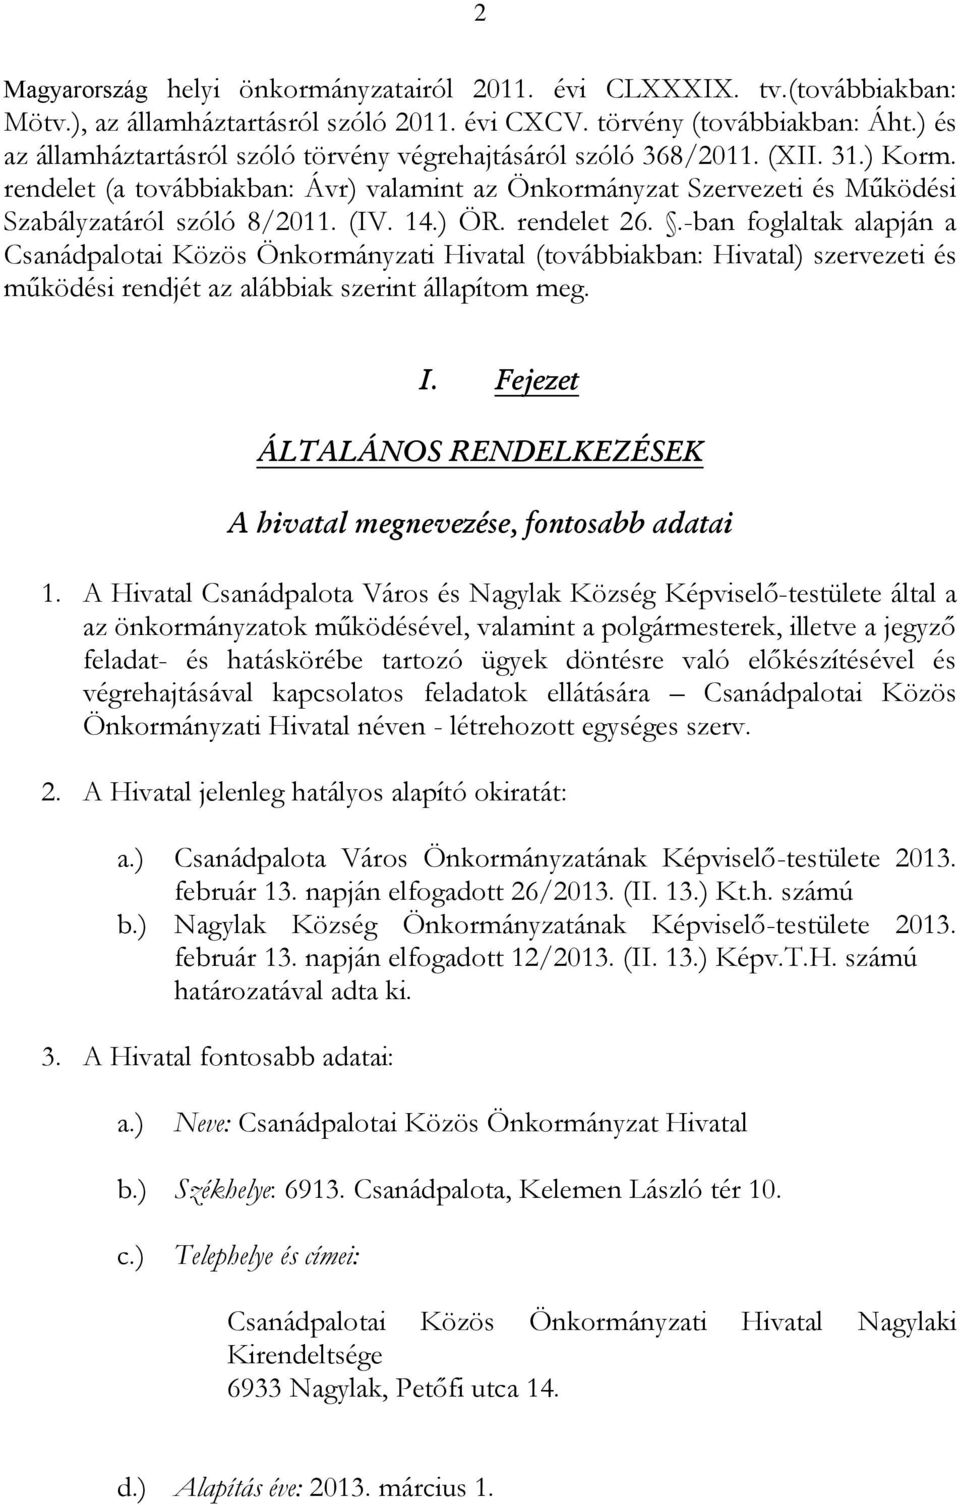 (IV. 14.) ÖR. rendelet 26..-ban foglaltak alapján a Csanádpalotai Közös Önkormányzati Hivatal (továbbiakban: Hivatal) szervezeti és működési rendjét az alábbiak szerint állapítom meg. I.